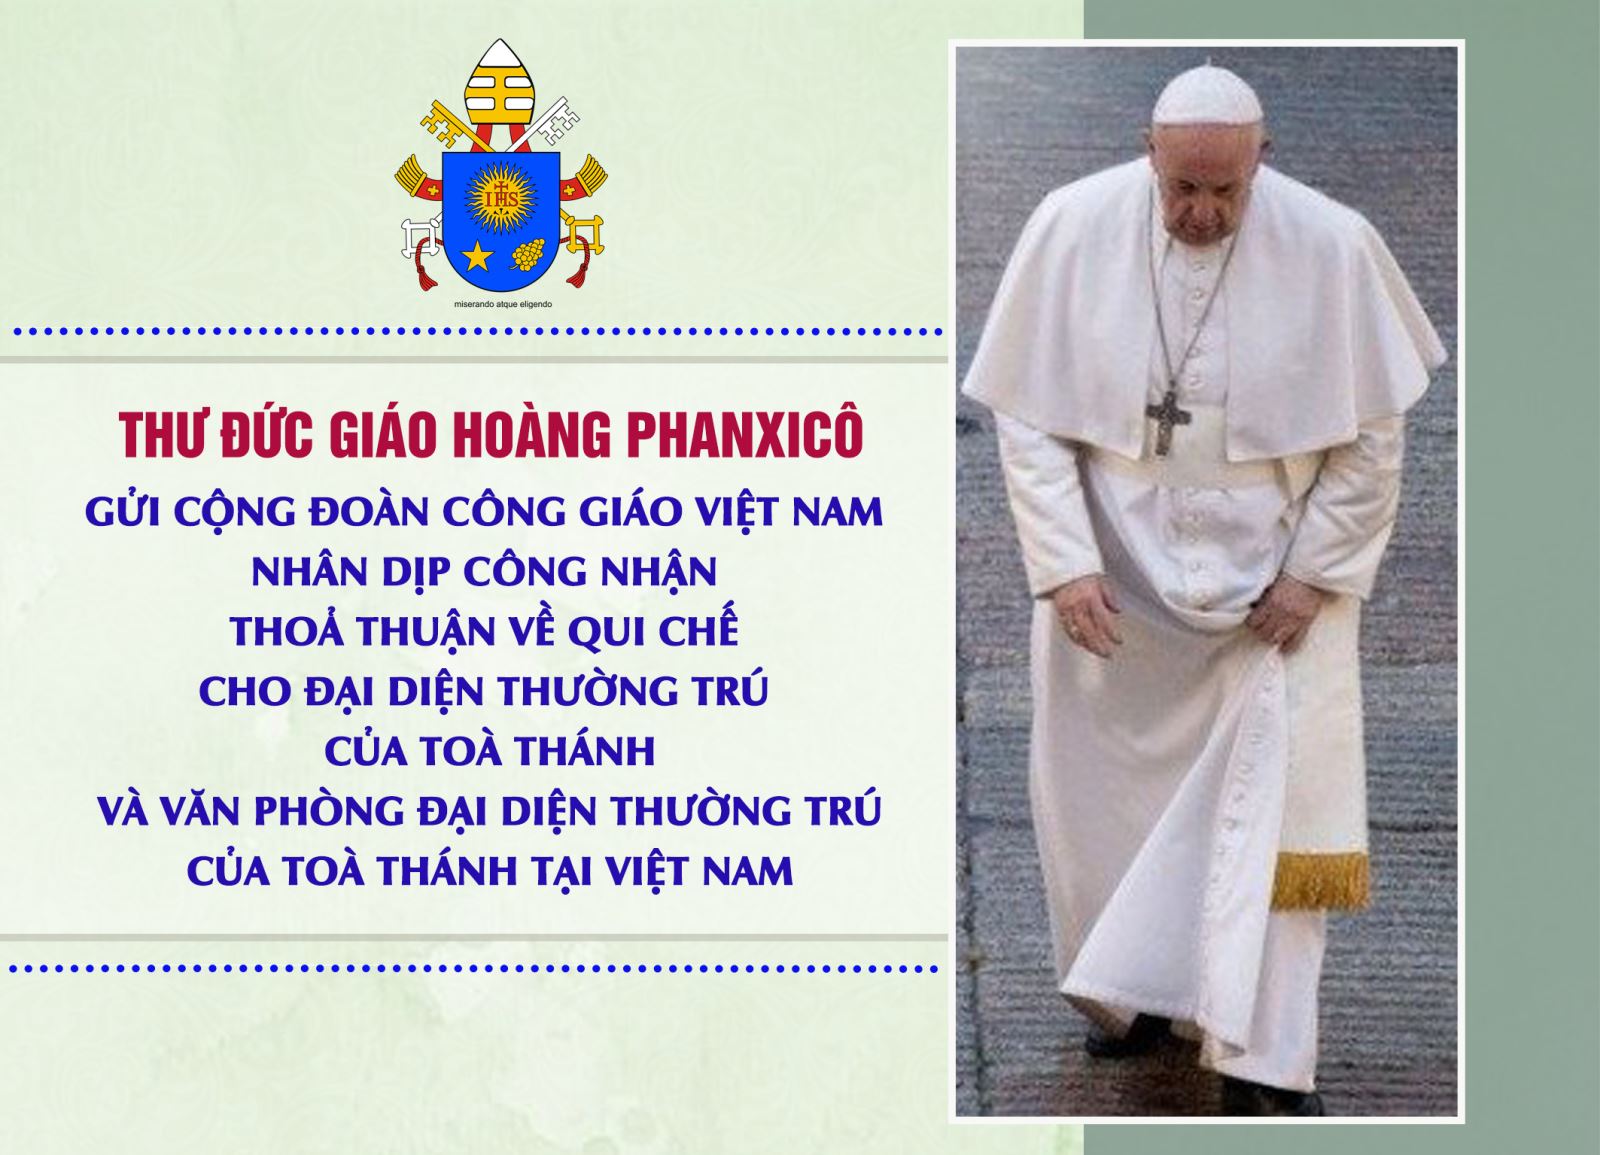  Thư Đức Giáo Hoàng Phanxicô gửi cộng đoàn Công giáo Việt Nam nhân dịp công nhận Thoả thuận về Qui chế cho Đại diện thường trú của Toà Thánh